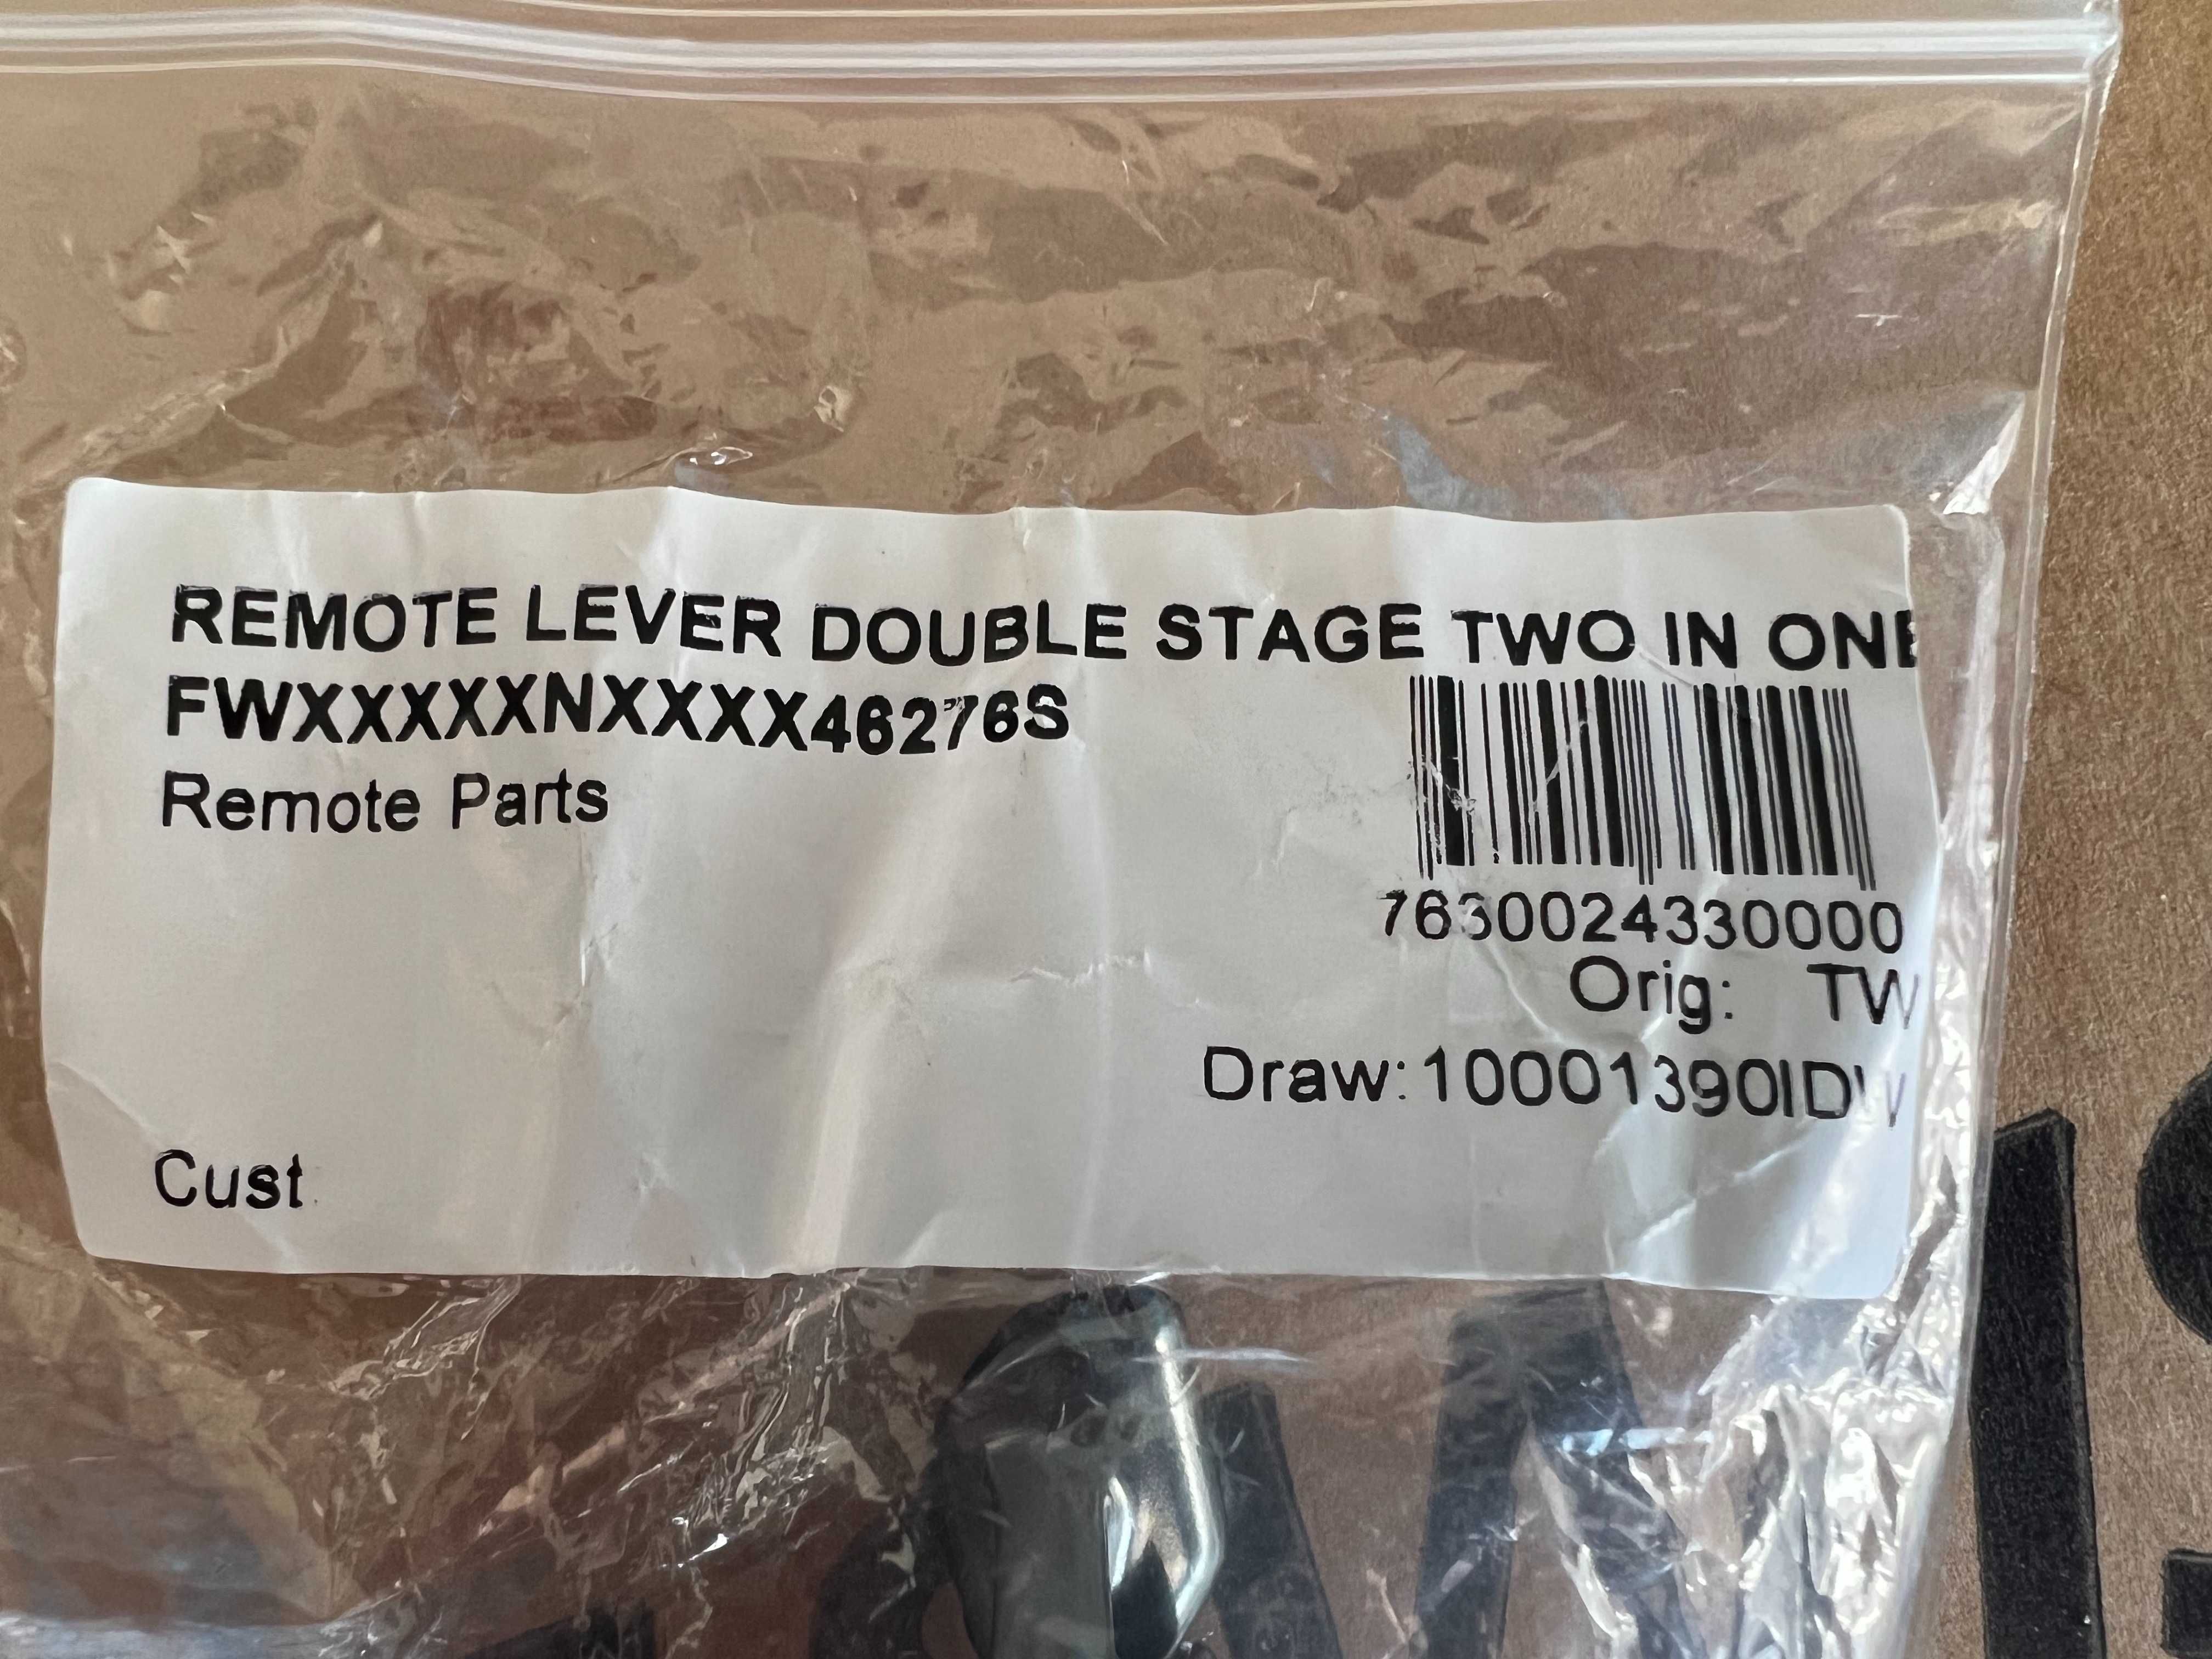 DT Swiss - Remote Lever Double Stage Two in One FWXXXXXNXXXX46276S